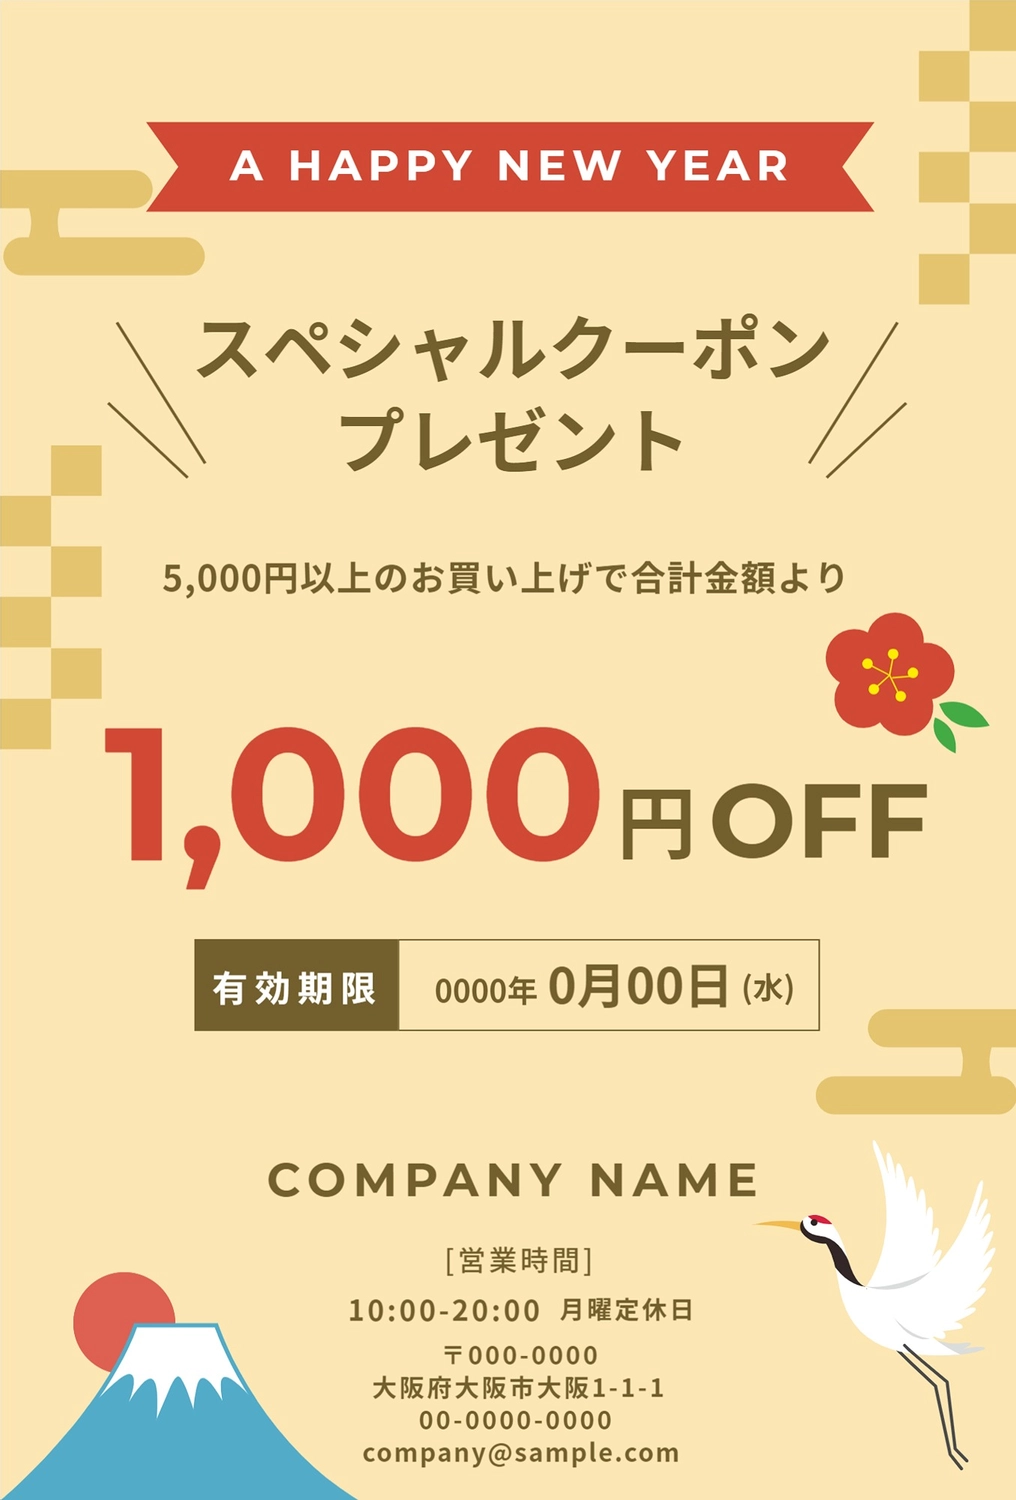 新春のダイレクトメール, off, atmosphere, January, message card template